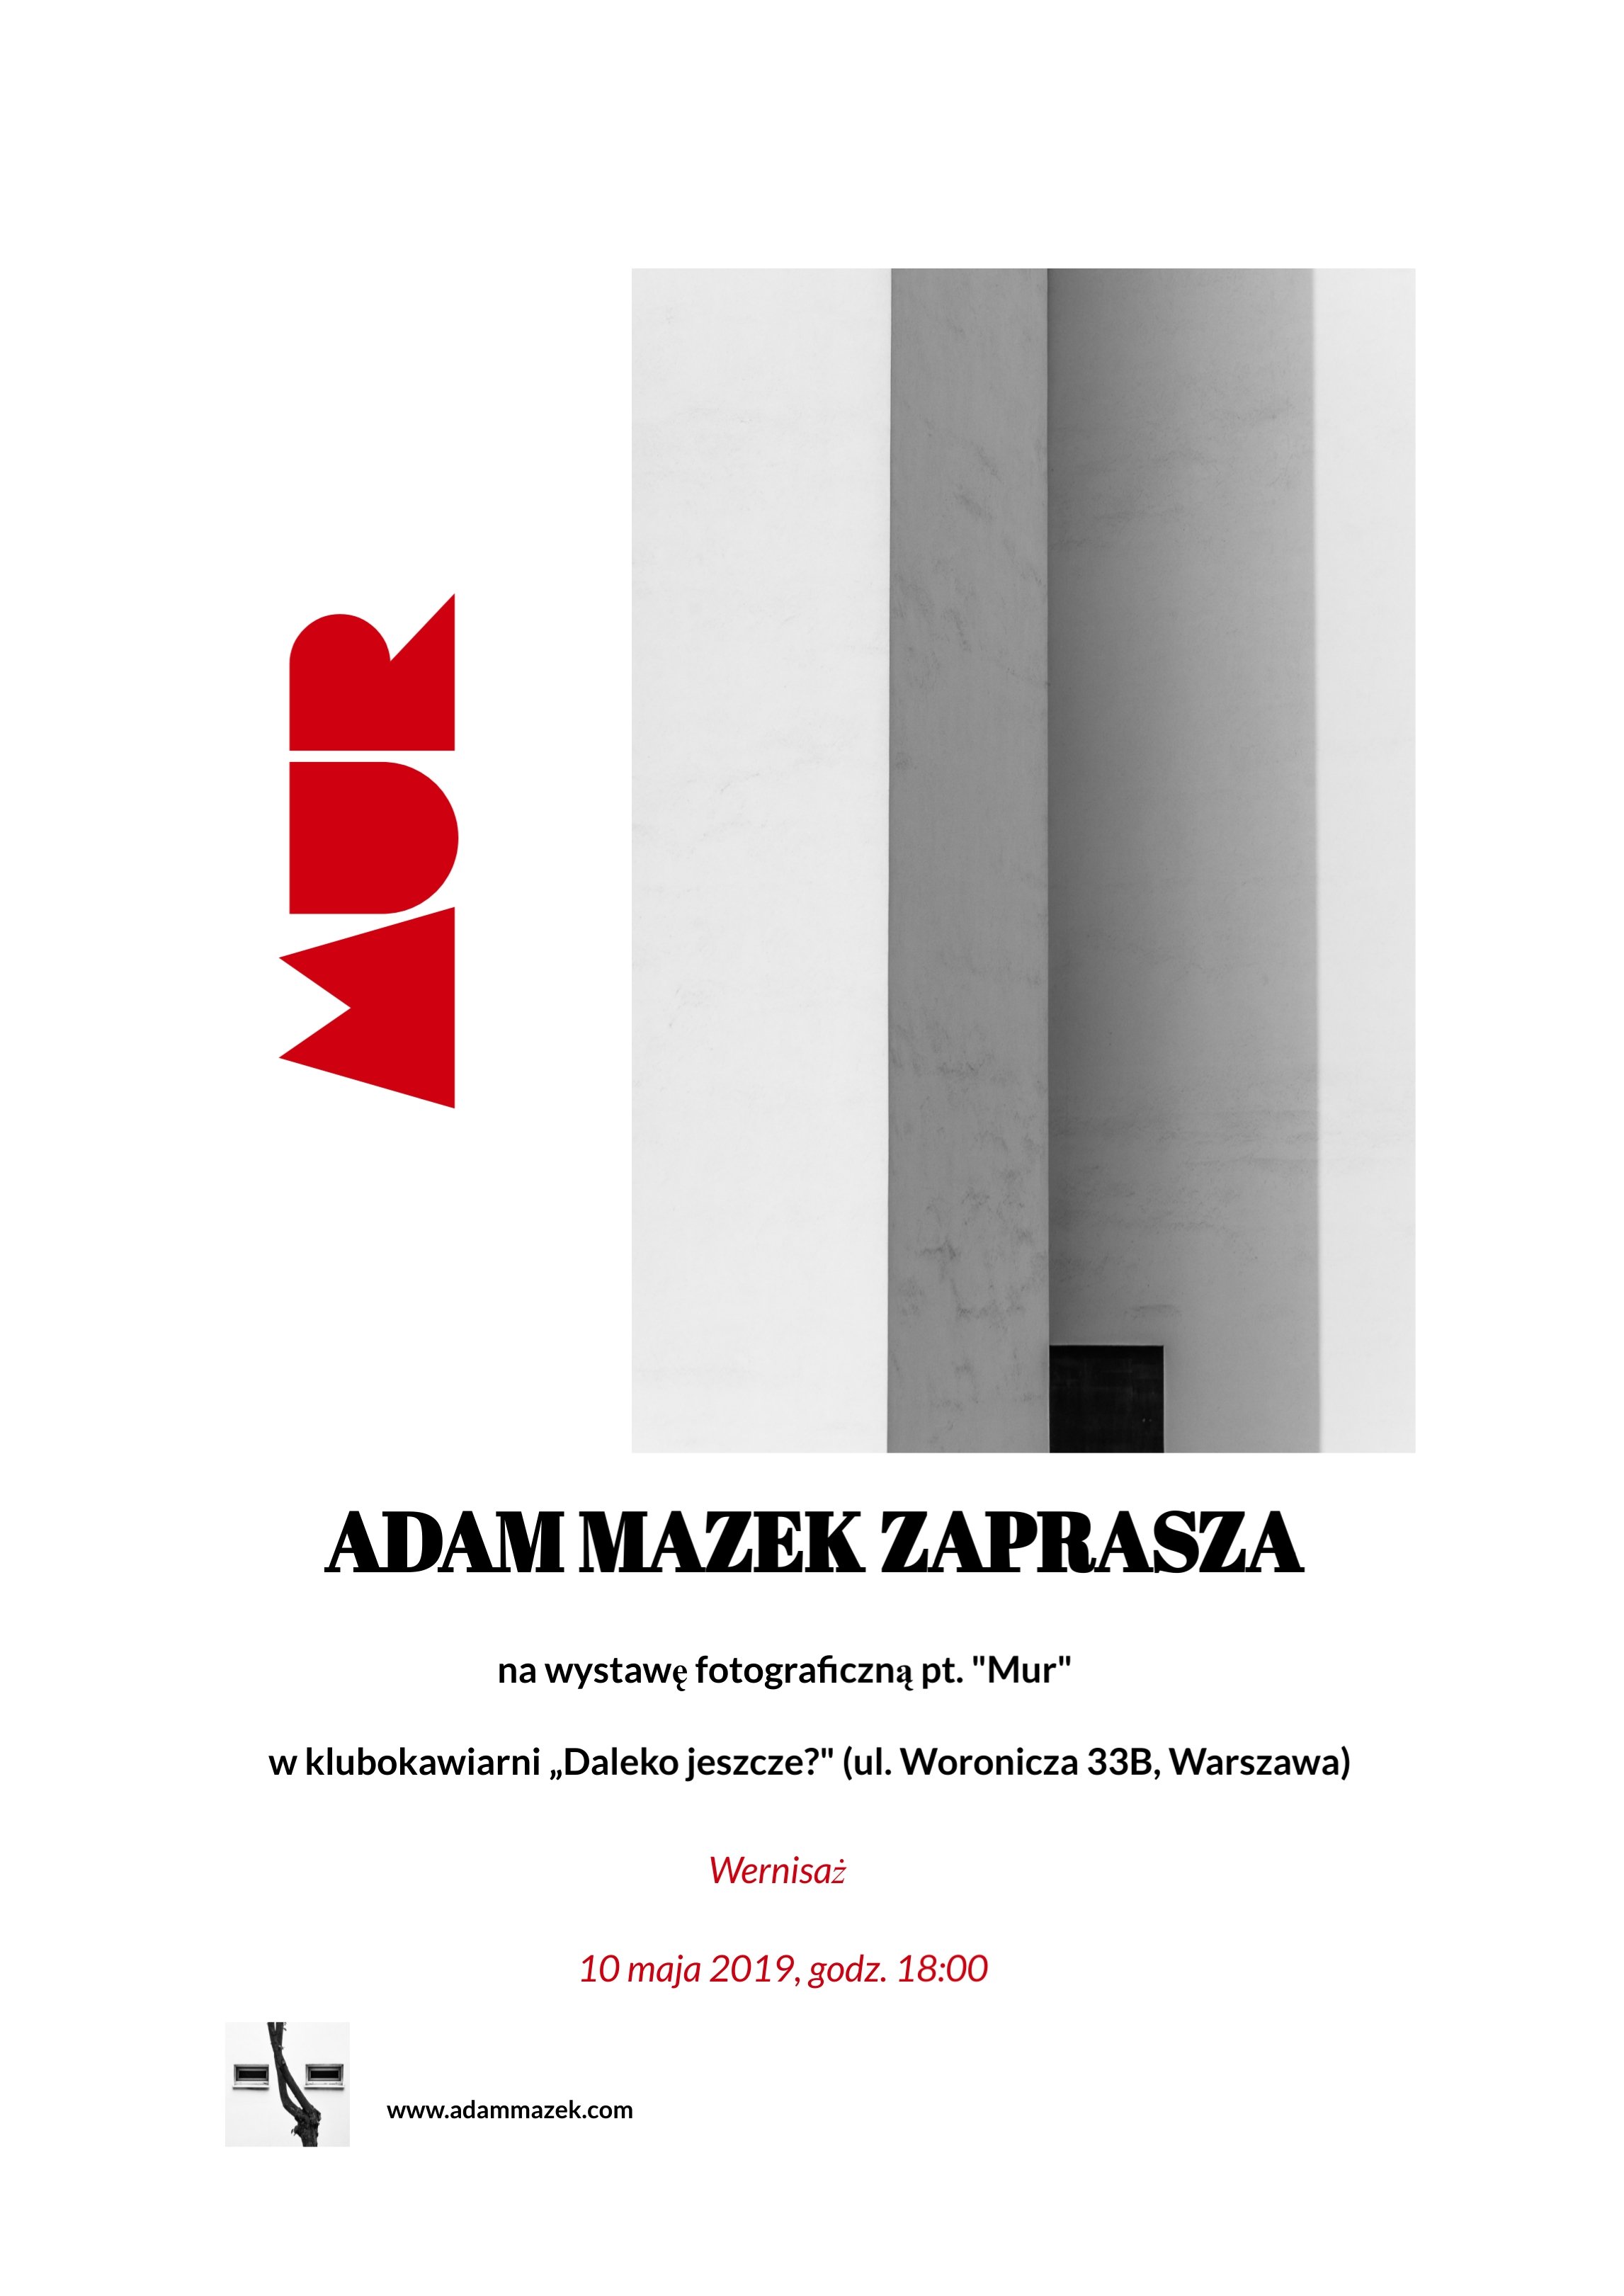 Adam Mazek Photography Warsaw (Warszawa) 2019. Plakat wystawy fotograficznej - Mur. Daleko jeszcze?